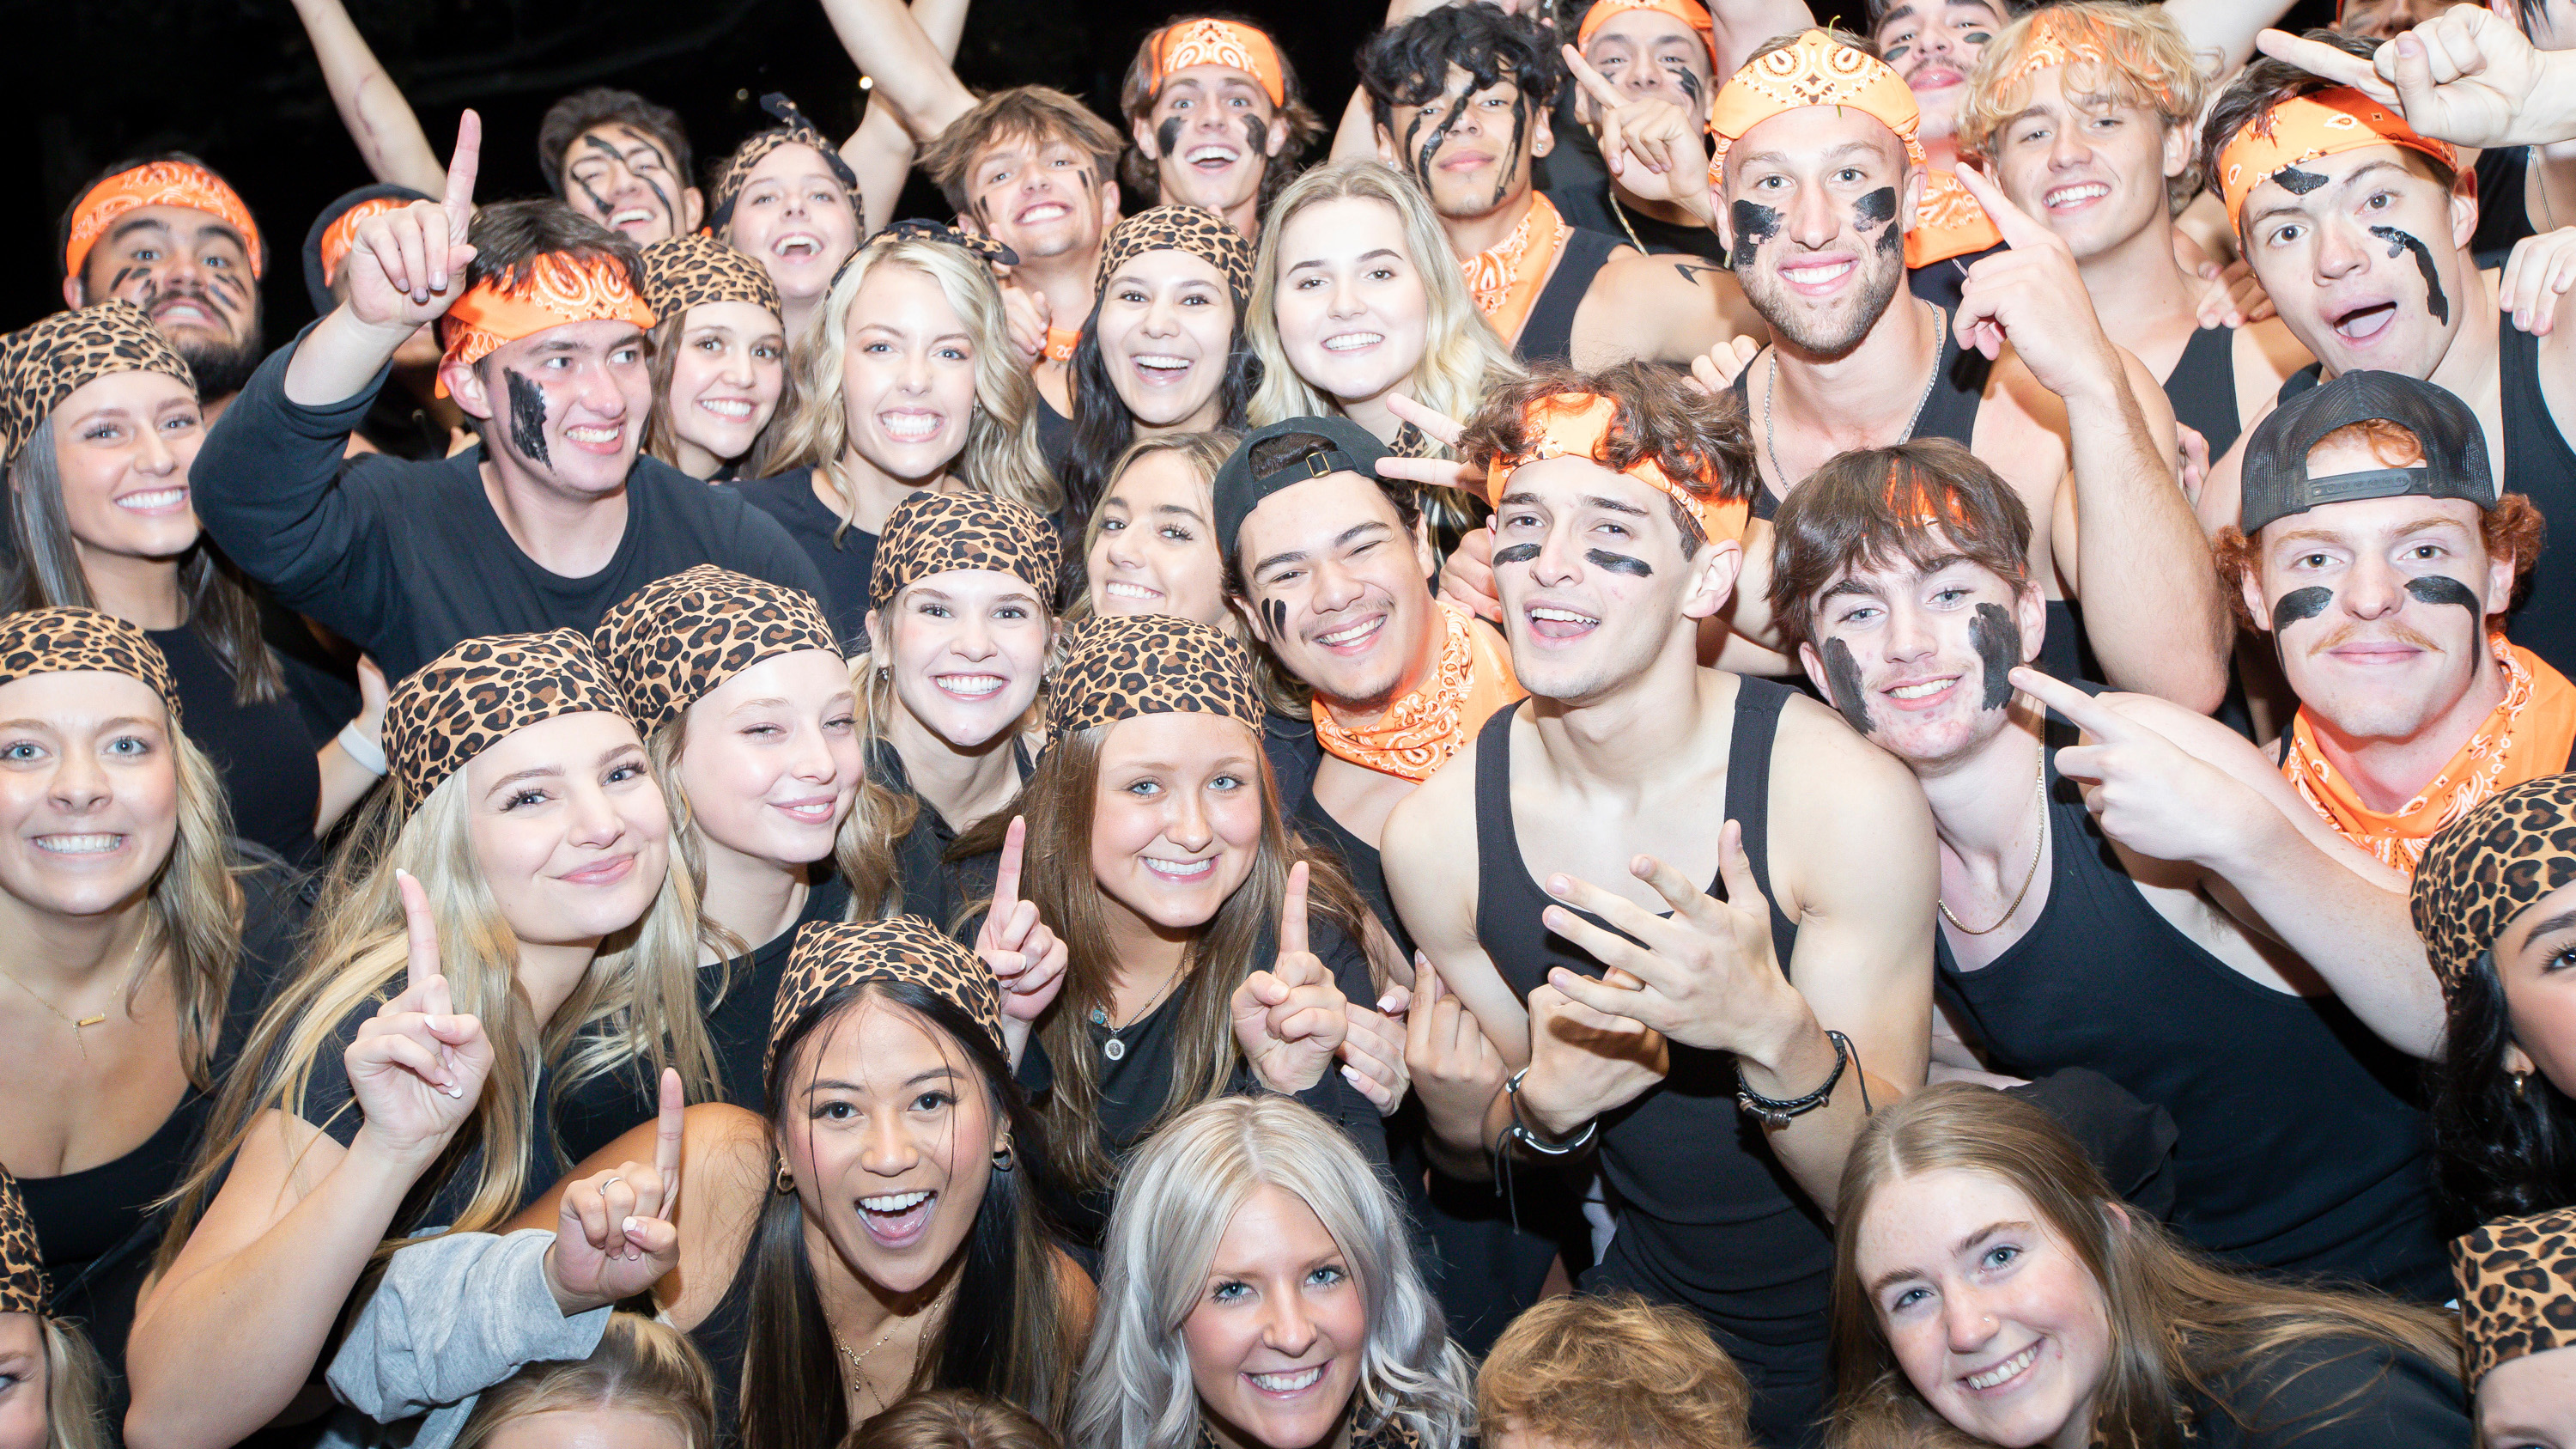 A large number of students wearing black and orange huddled together smiling